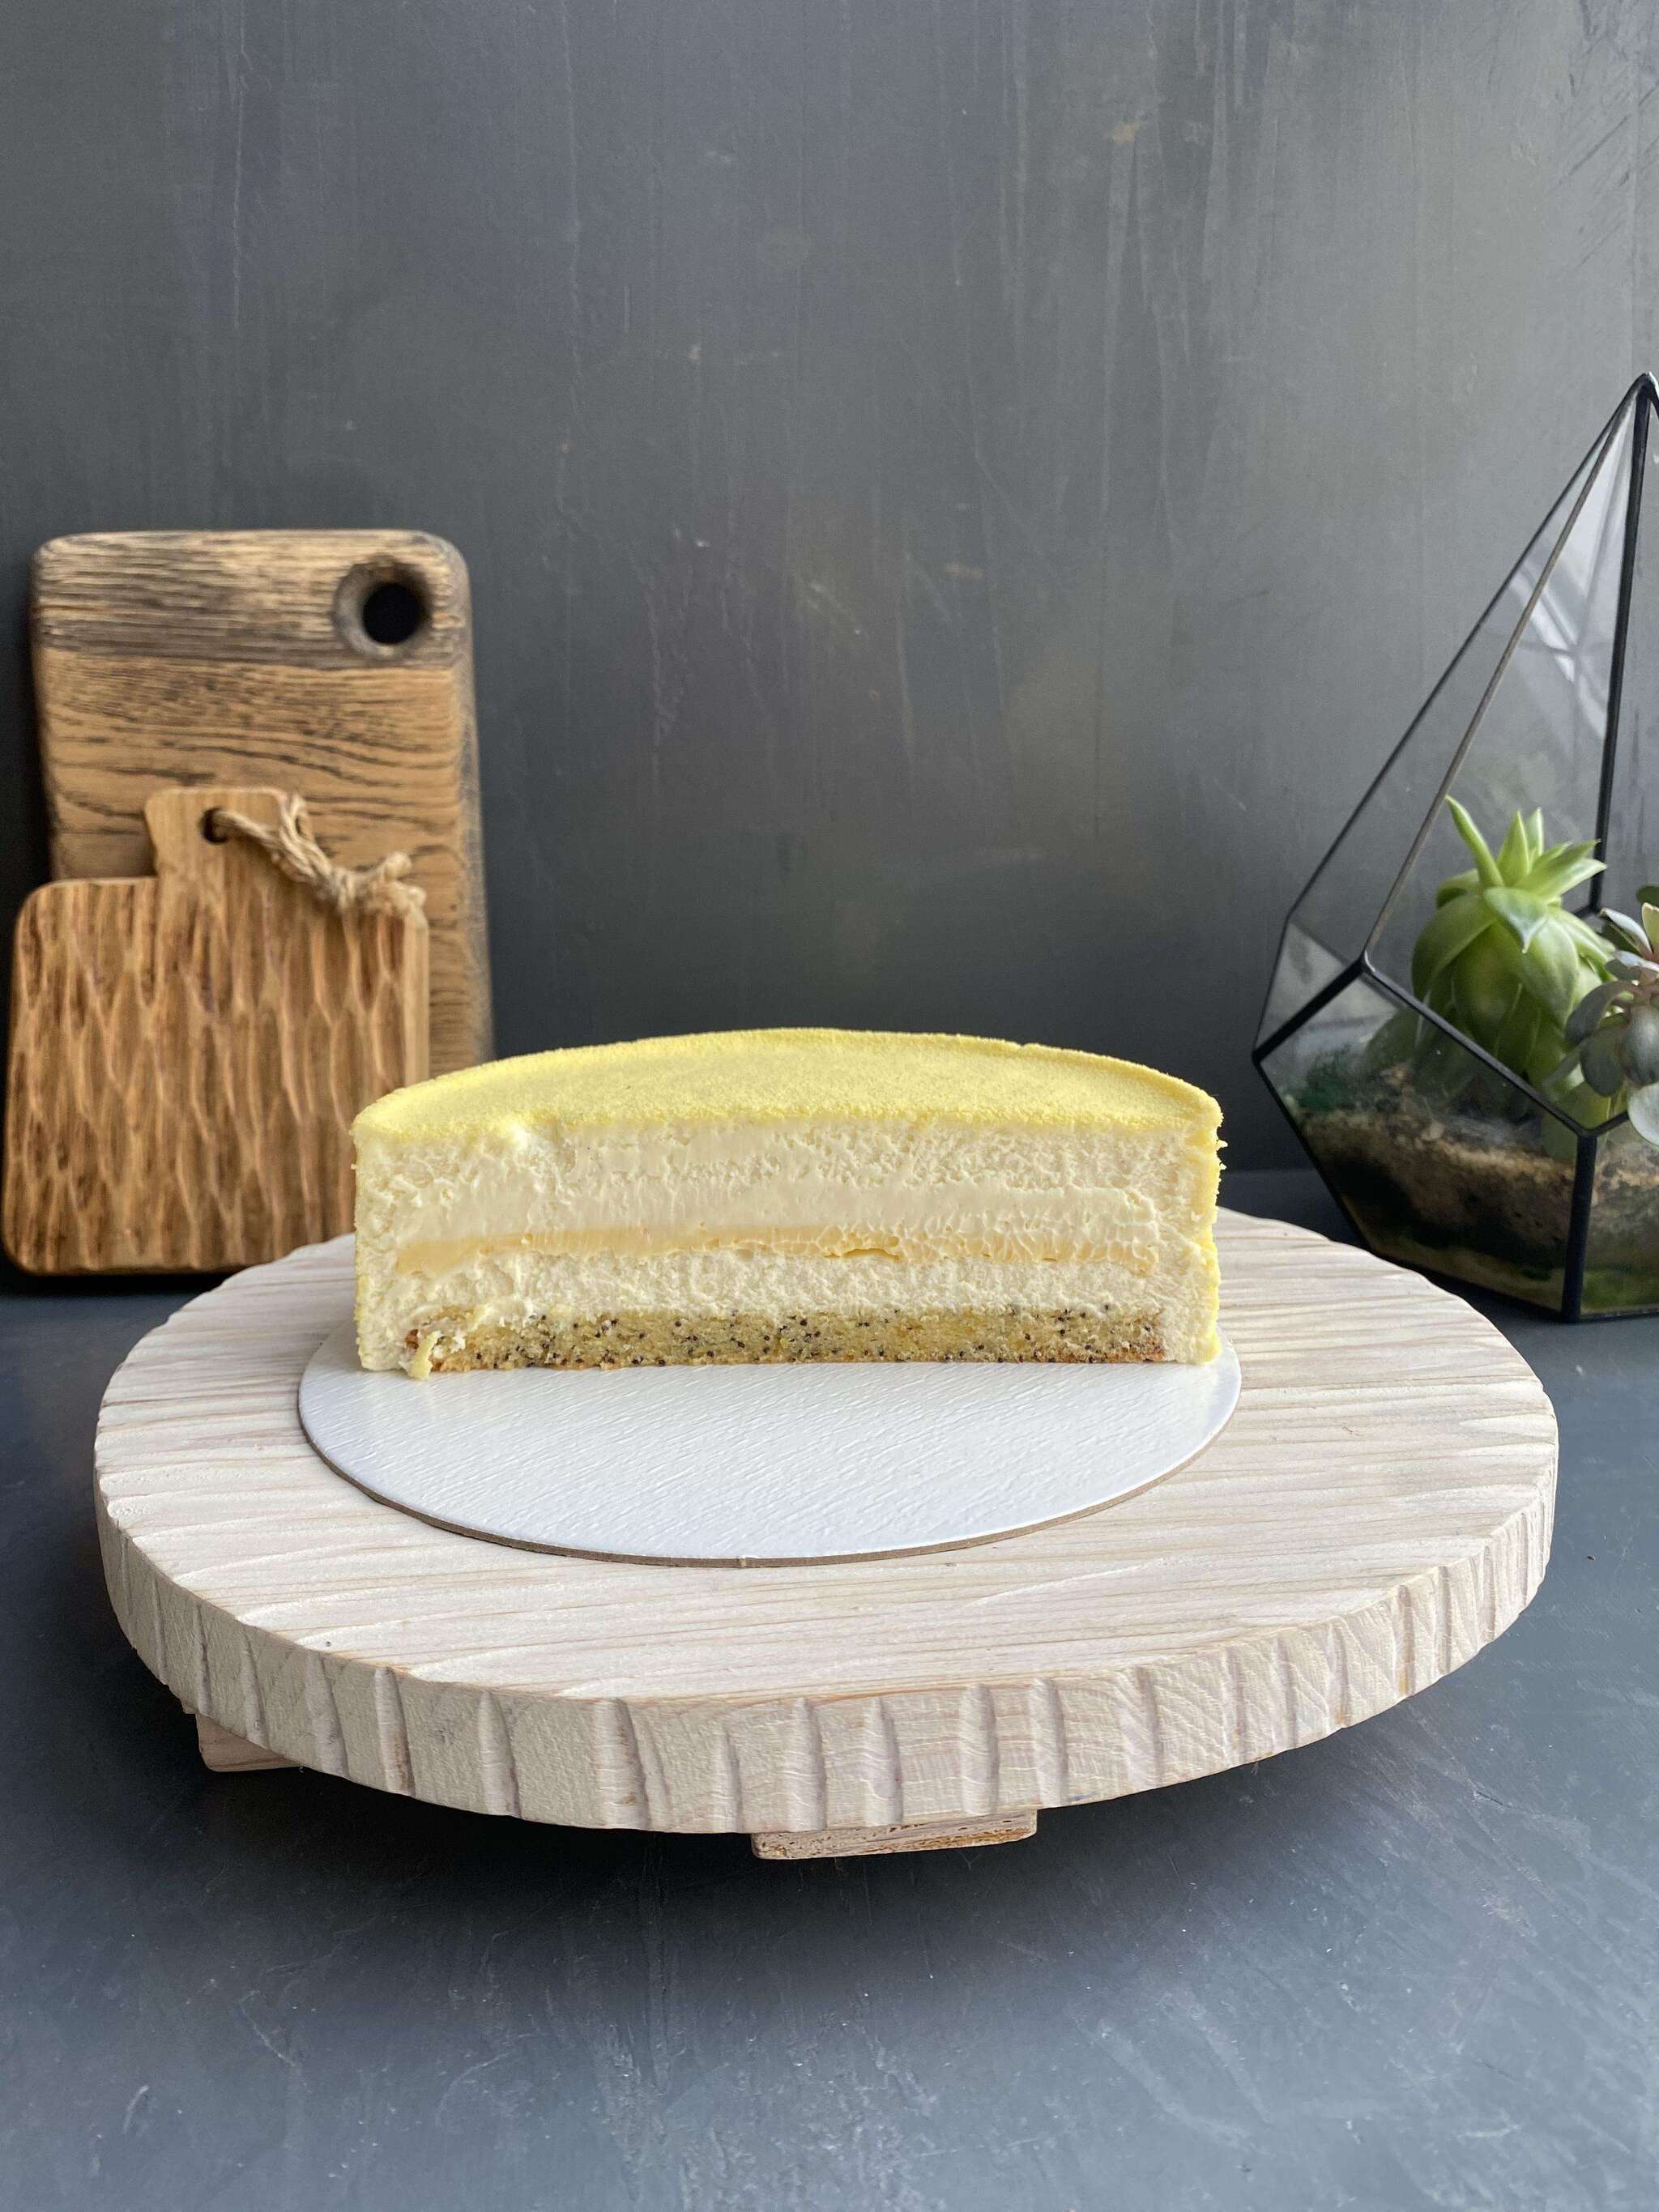 Муссовый торт “Клубника со сливками” - пошаговый рецепт с фото